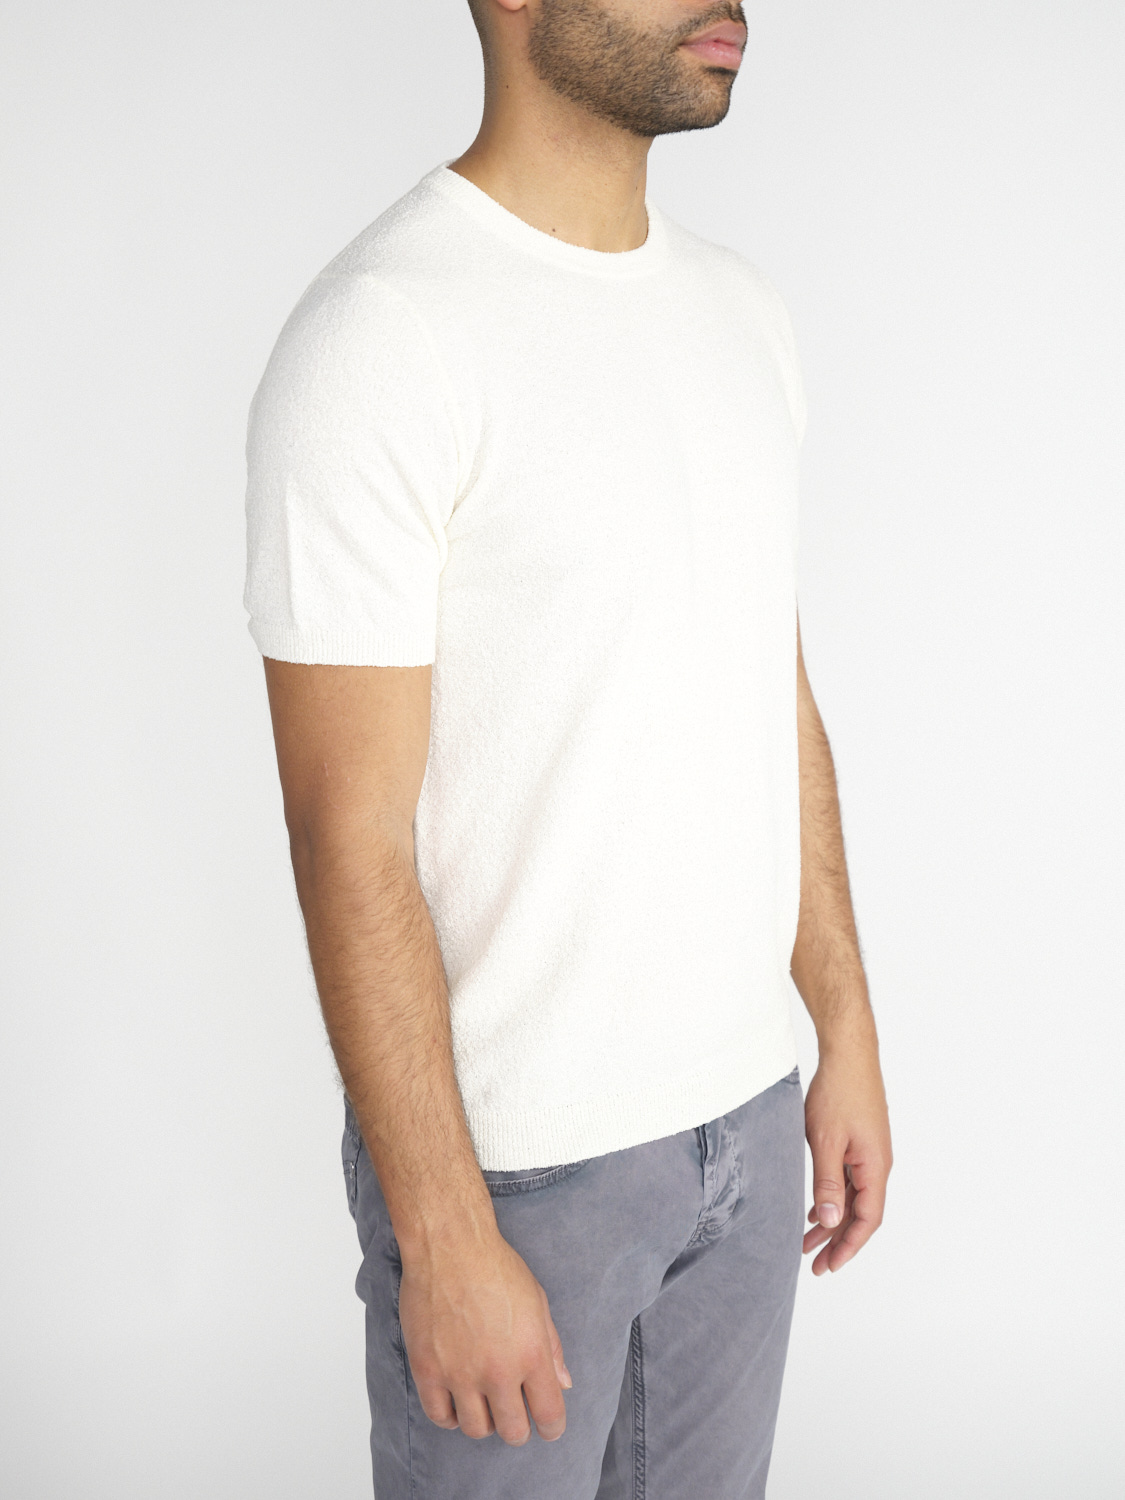 Stefan Brandt Eli 30 – Crew Neck T-Shirt aus Baumwolle weiß XL